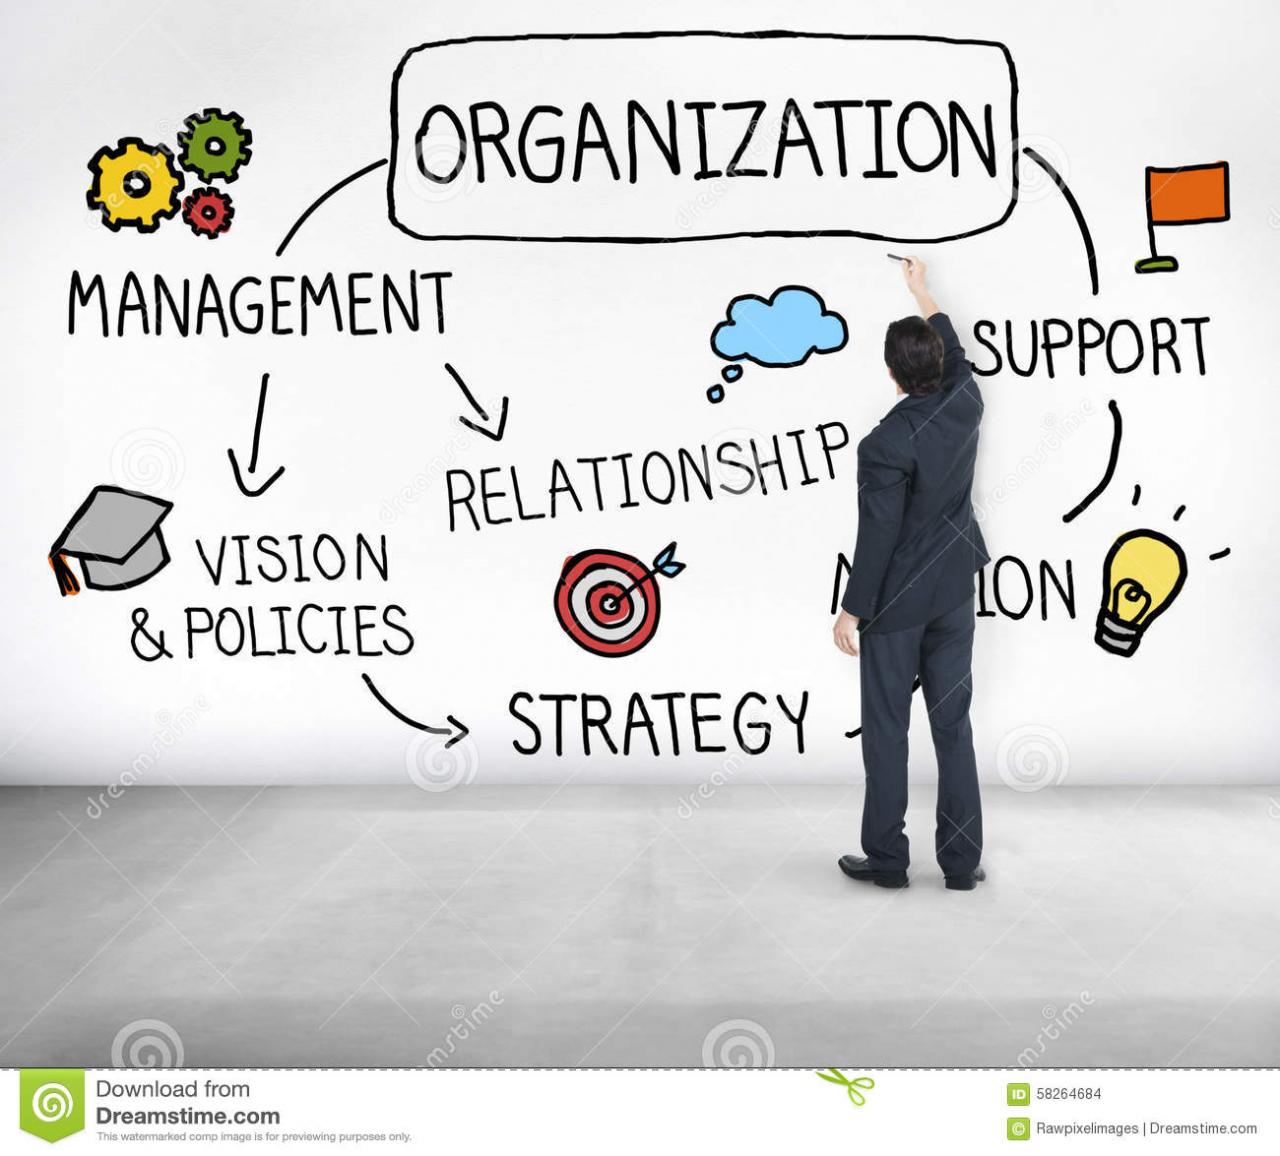 Group organization management an international journal